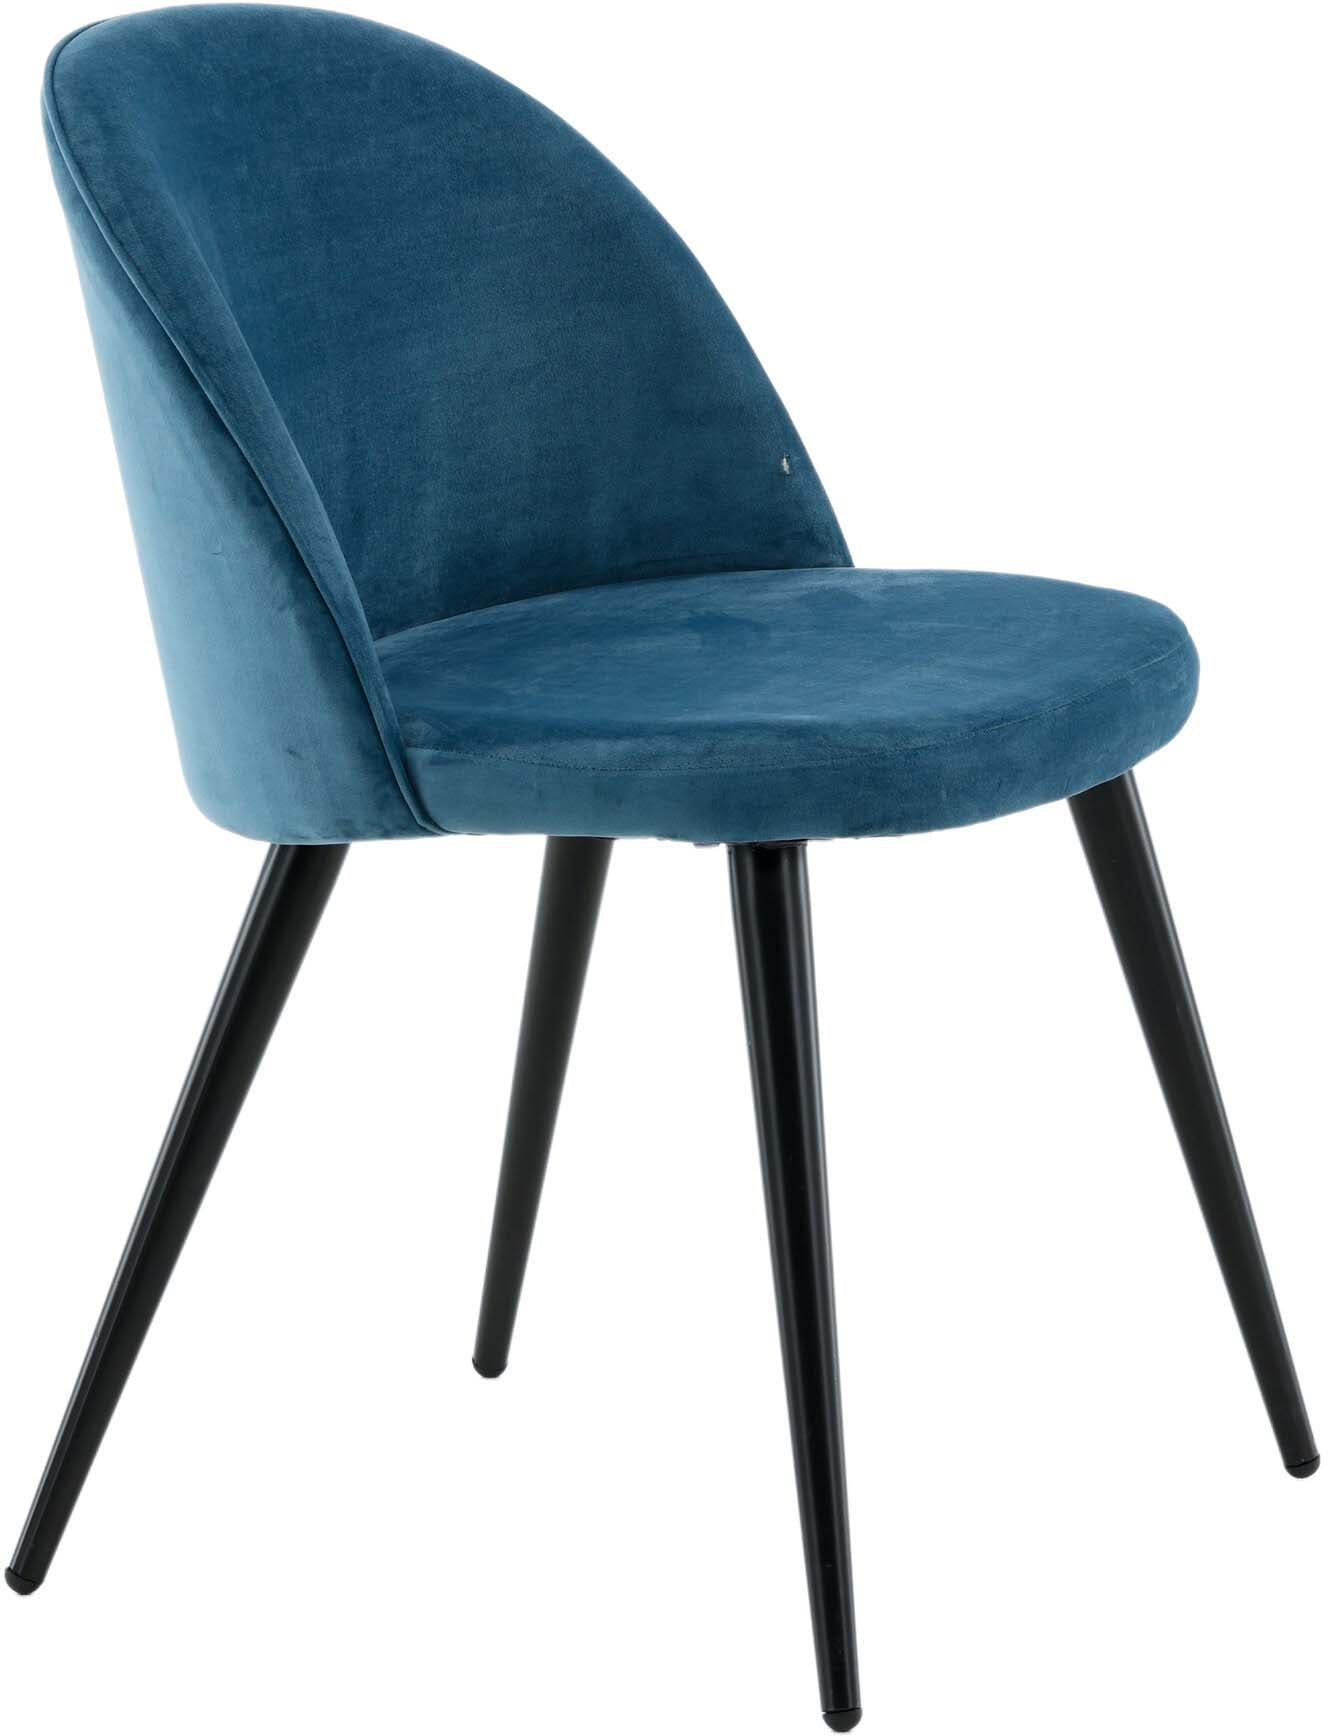 Velvet Matstol Stuhl in Blau / Schwarz präsentiert im Onlineshop von KAQTU Design AG. Schalenstuhl ist von Venture Home